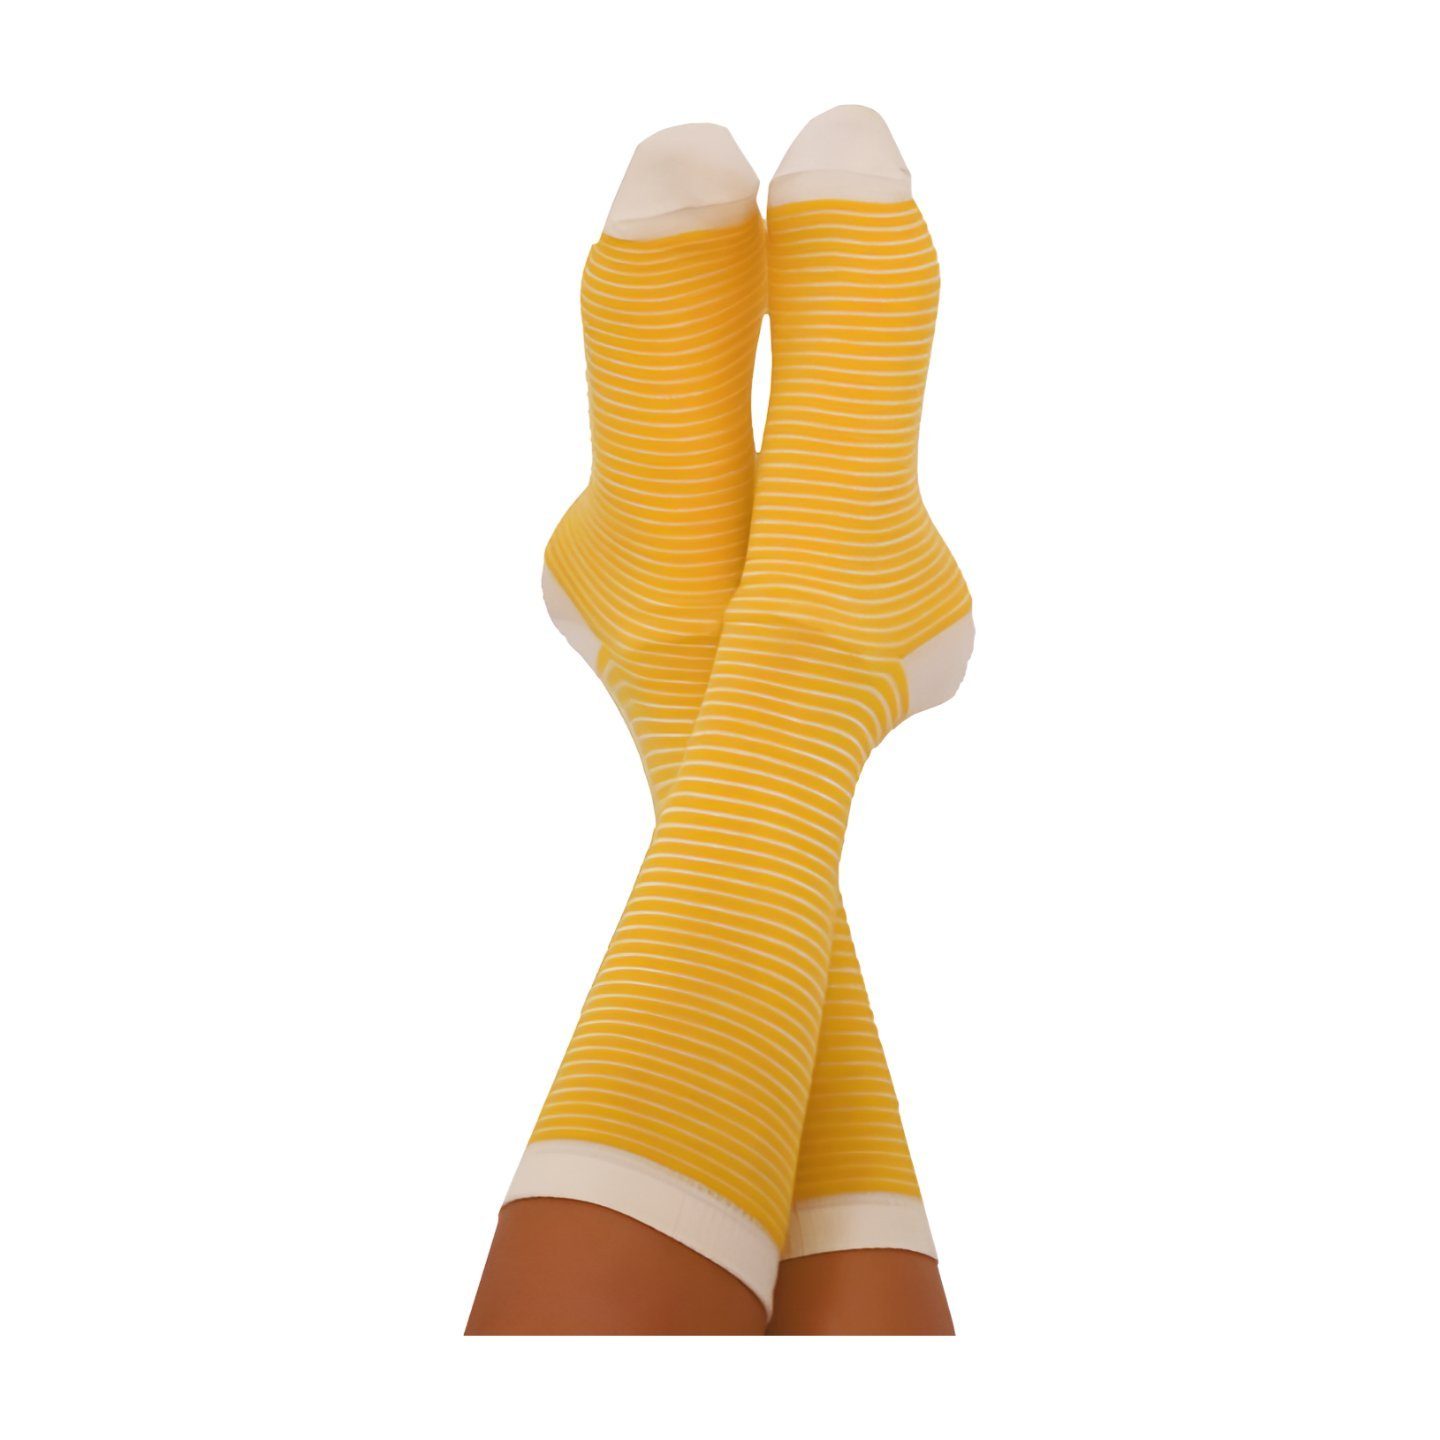 Albero Natur Socken Damen Socken, Hochwertige gelbe und naturfarbend  gestreifte Socken in klassischer Sockenhöhe